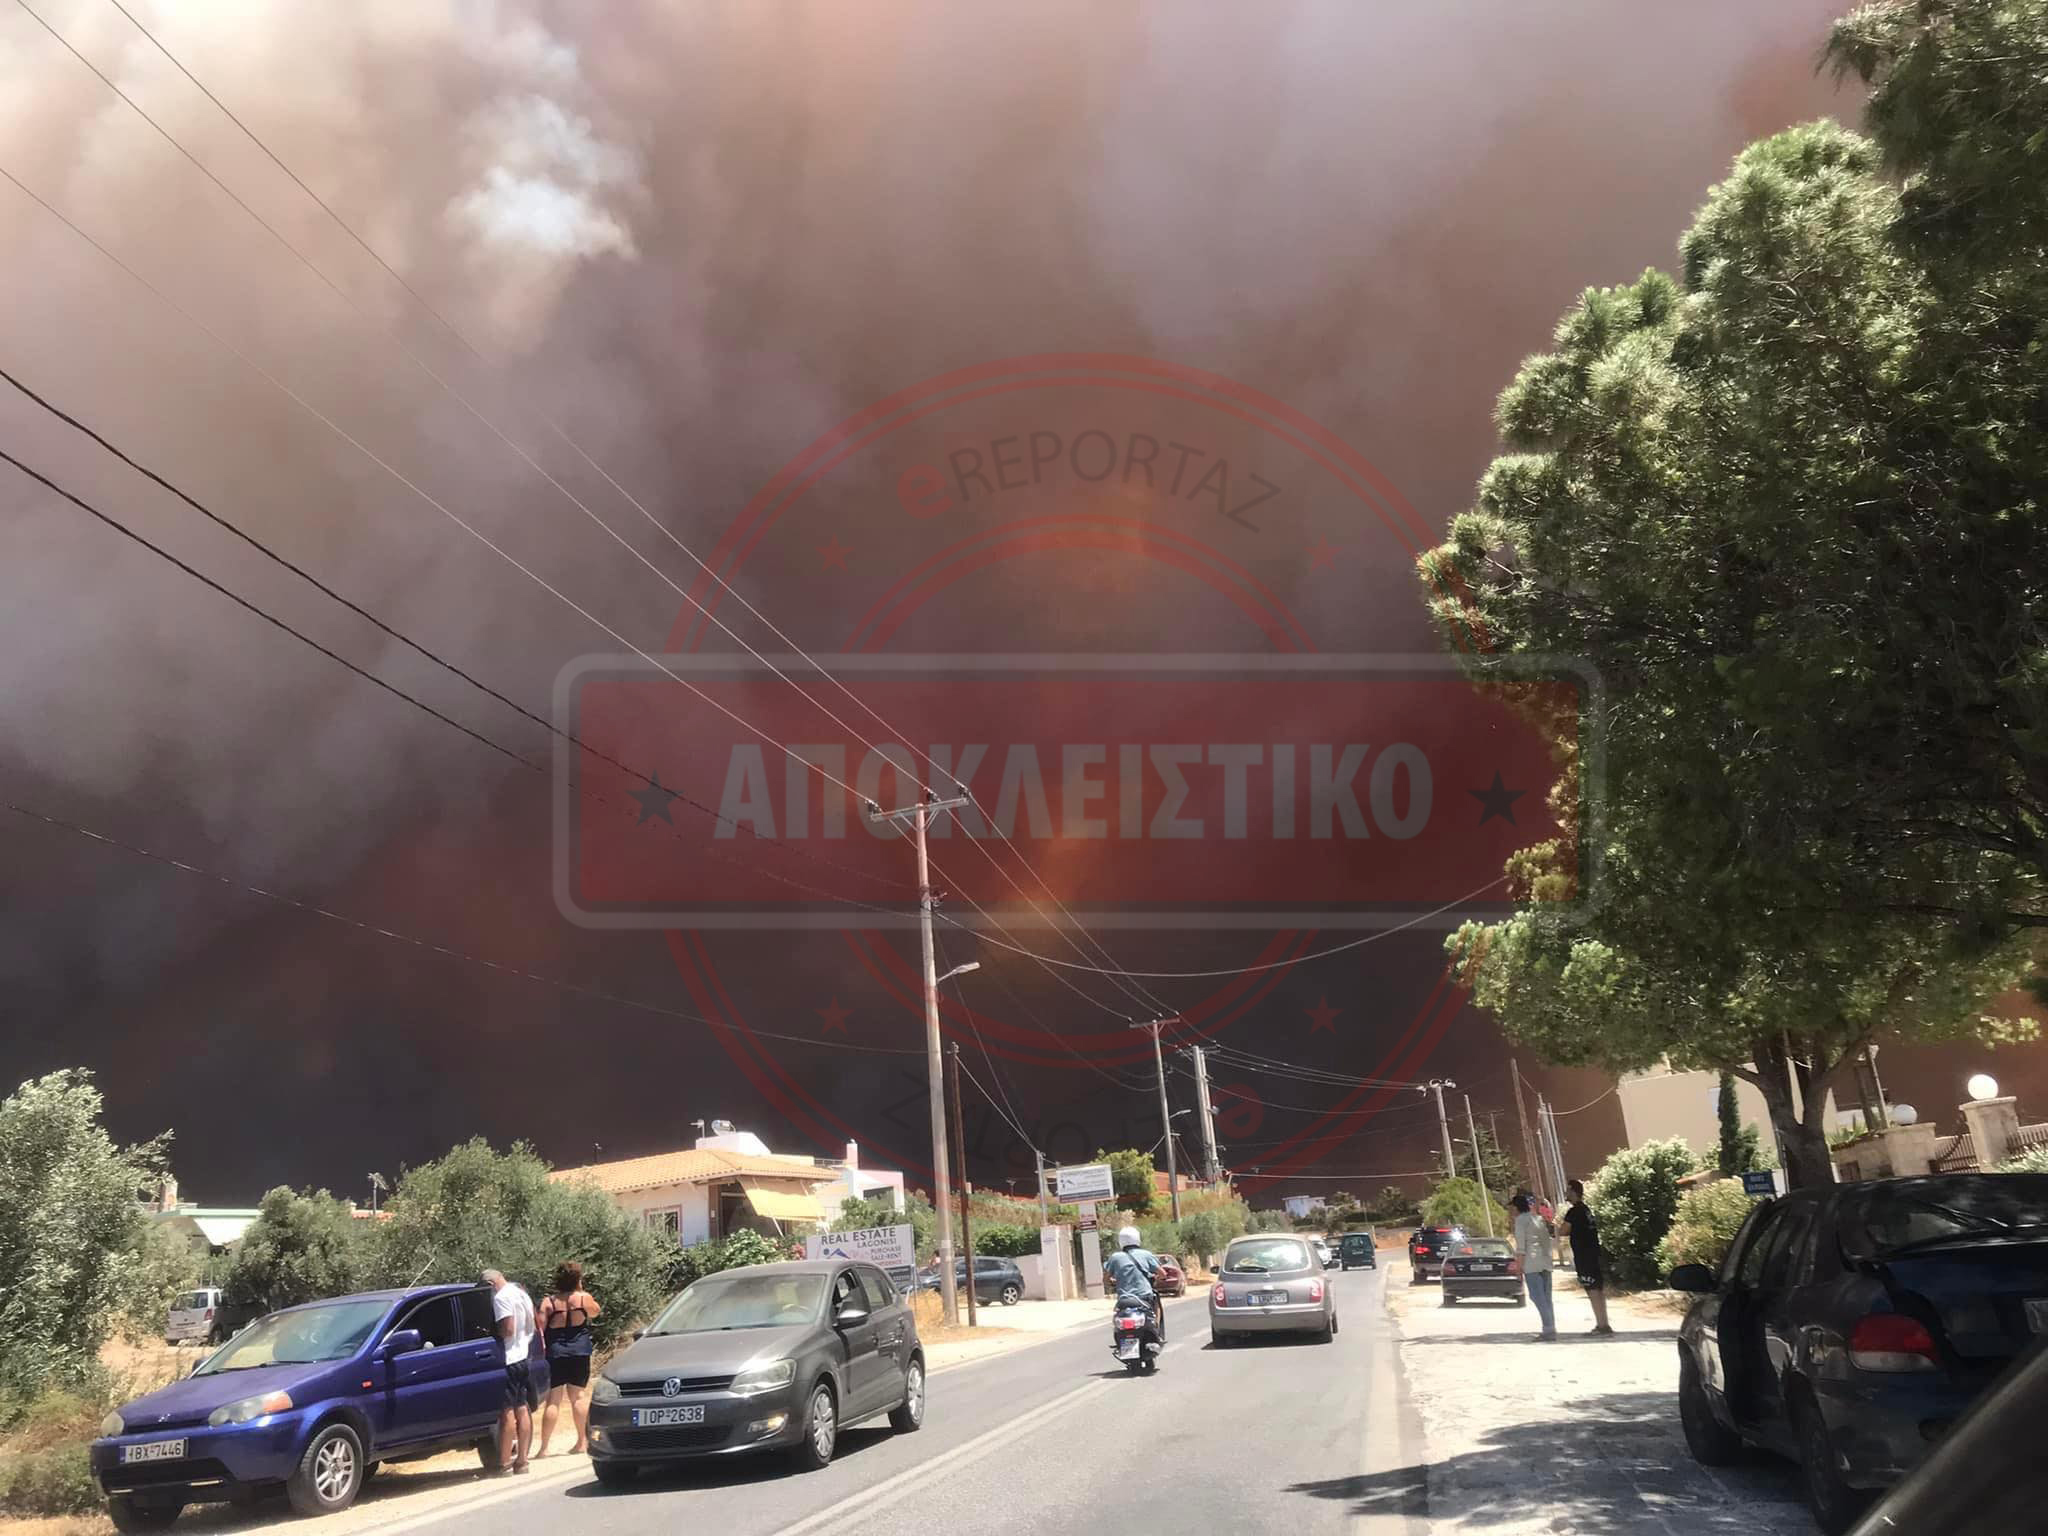 Μεγάλη φωτιά στον Νέο Κουβαρά Αττικής:  Έκτακτη ενημέρωση από την Πυροσβεστική - Και τρίτο μήνυμα 112 για εκκένωση - Γυρίζουν πίσω οχήματα να μην εγκλωβιστούν (Βίντεο - Φώτο)